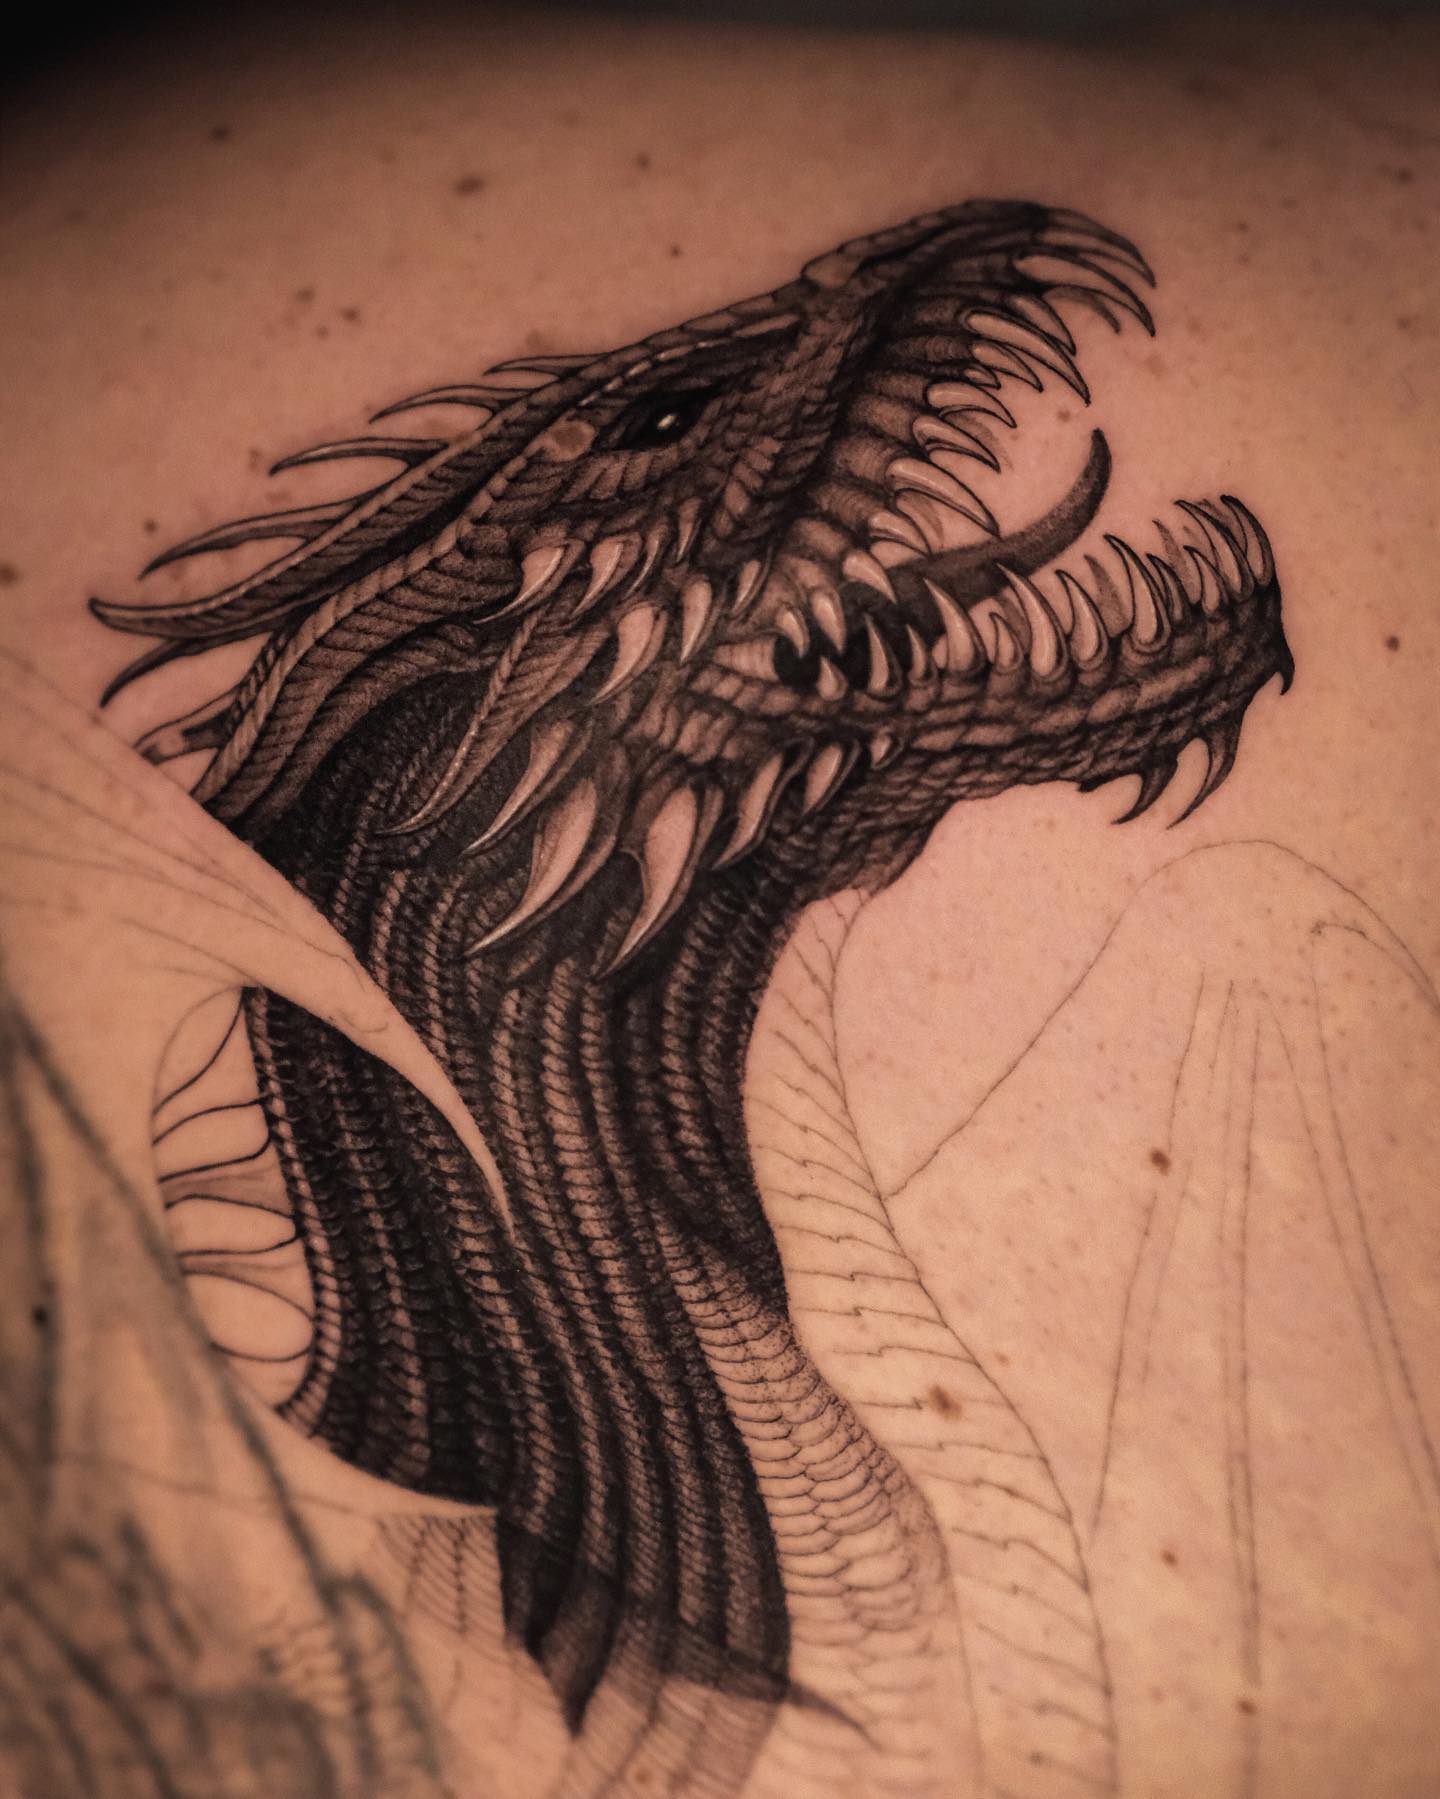 Realistic Head of Dragon Tattoo